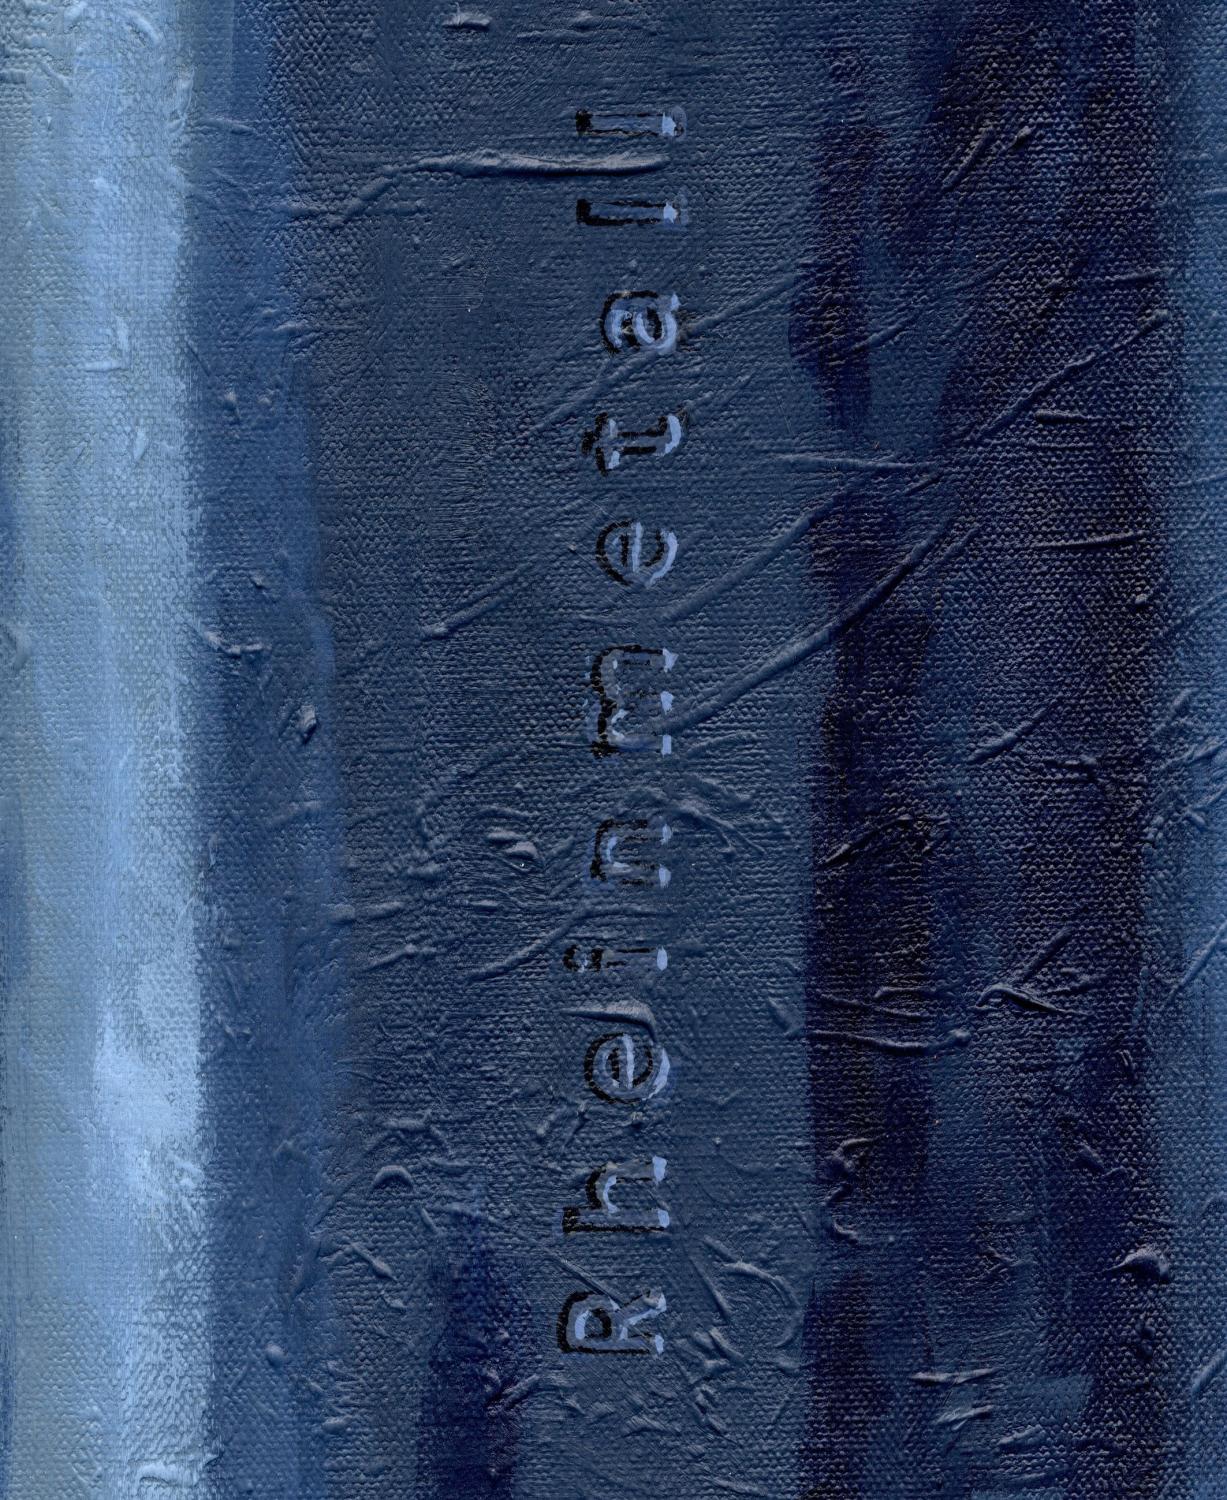 Patrone blau (Detail)